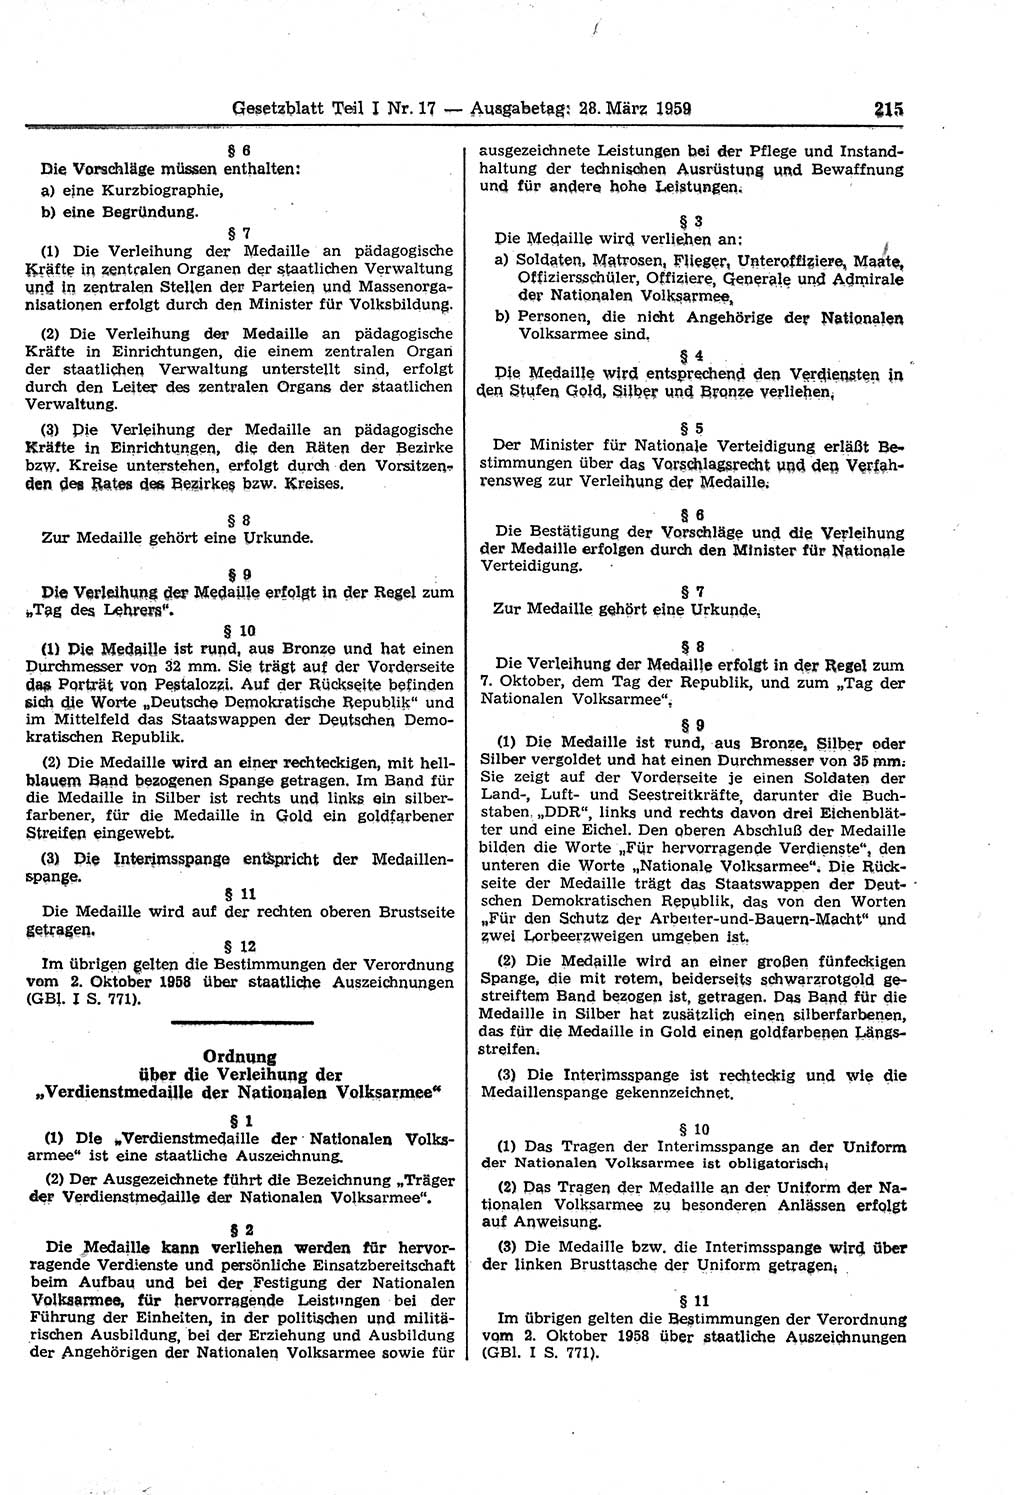 Gesetzblatt (GBl.) der Deutschen Demokratischen Republik (DDR) Teil Ⅰ 1959, Seite 215 (GBl. DDR Ⅰ 1959, S. 215)